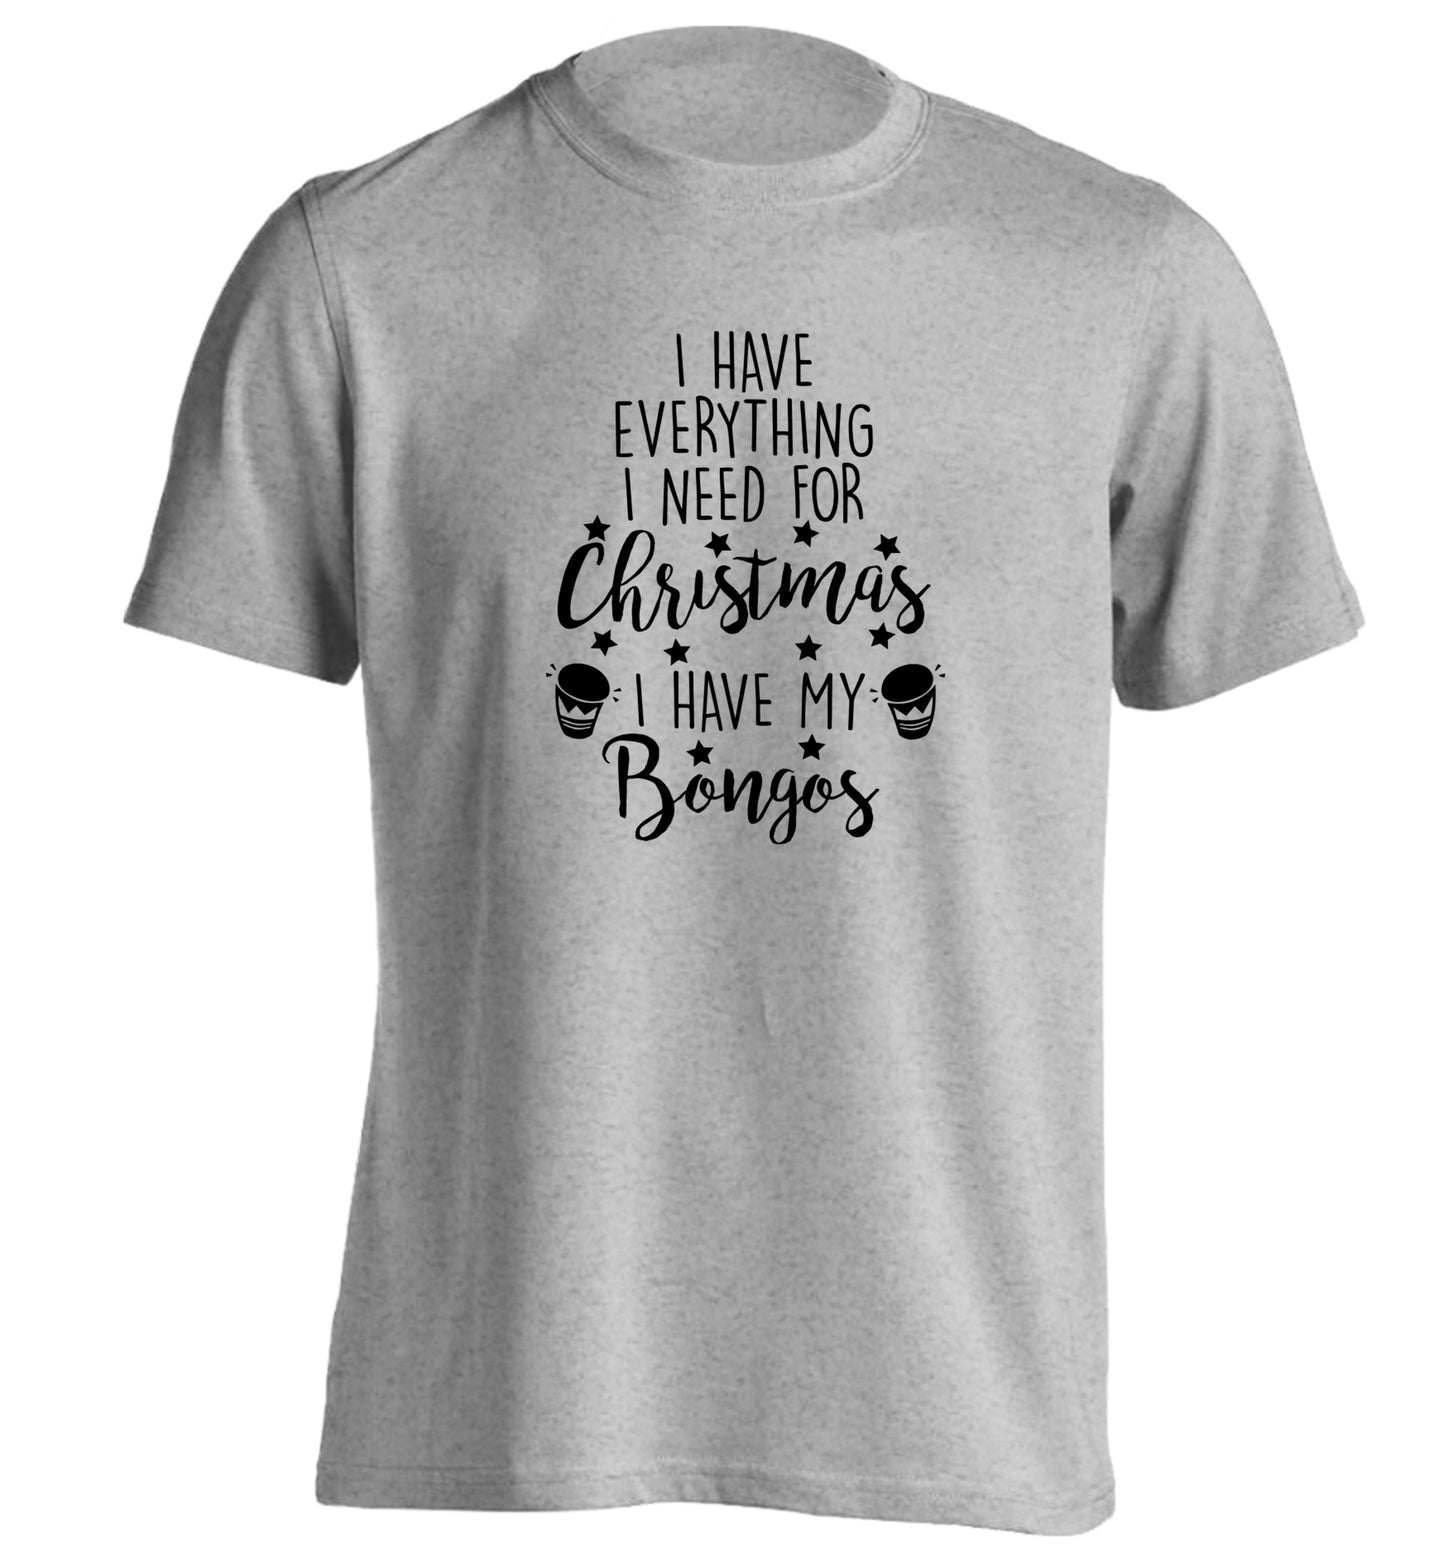 I have everything I need for Christmas I have my bongos! adults unisex grey Tshirt 2XL